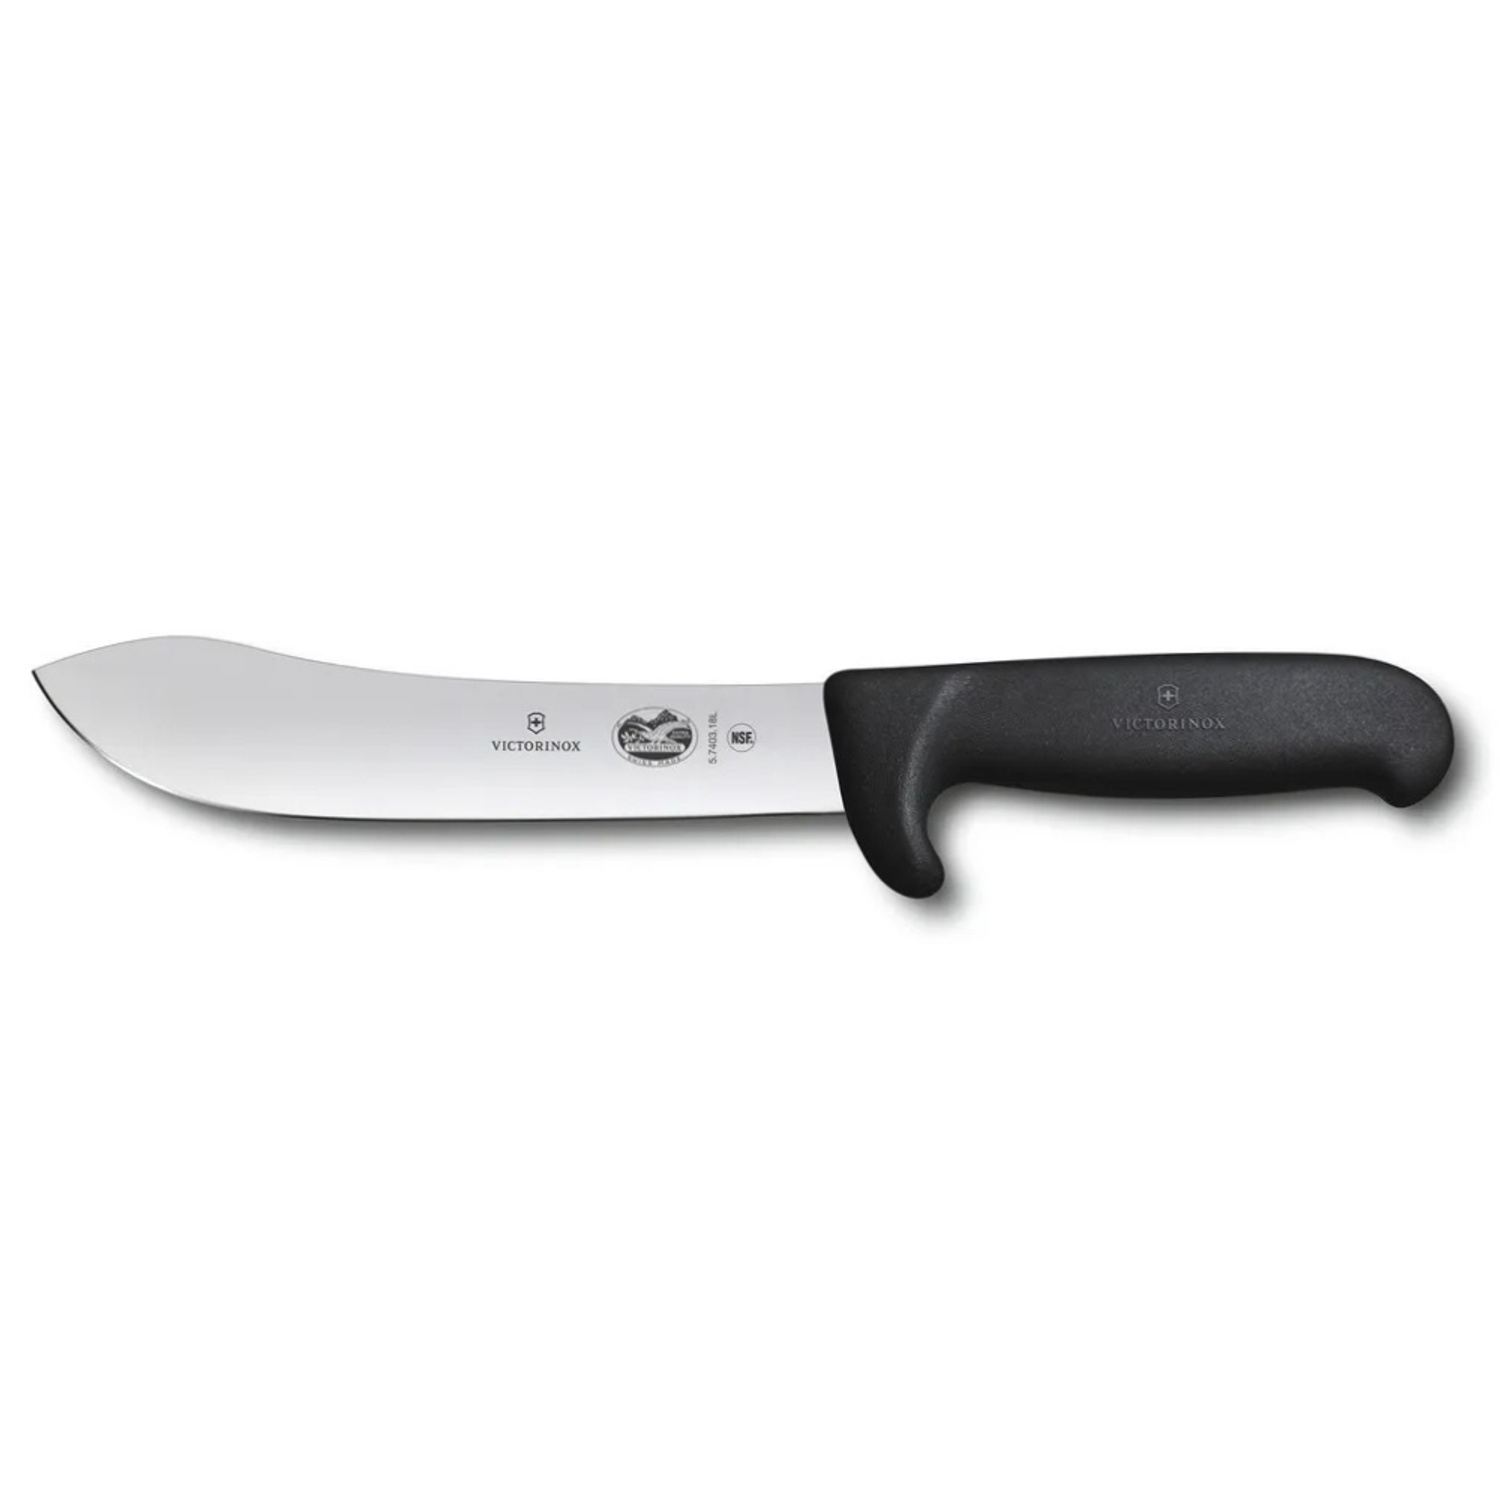 Нож кухонный Victorinox Butchers knife 5.7403.18 стальной разделочный лезвие 180 мм прямая заточка черный - фото 1